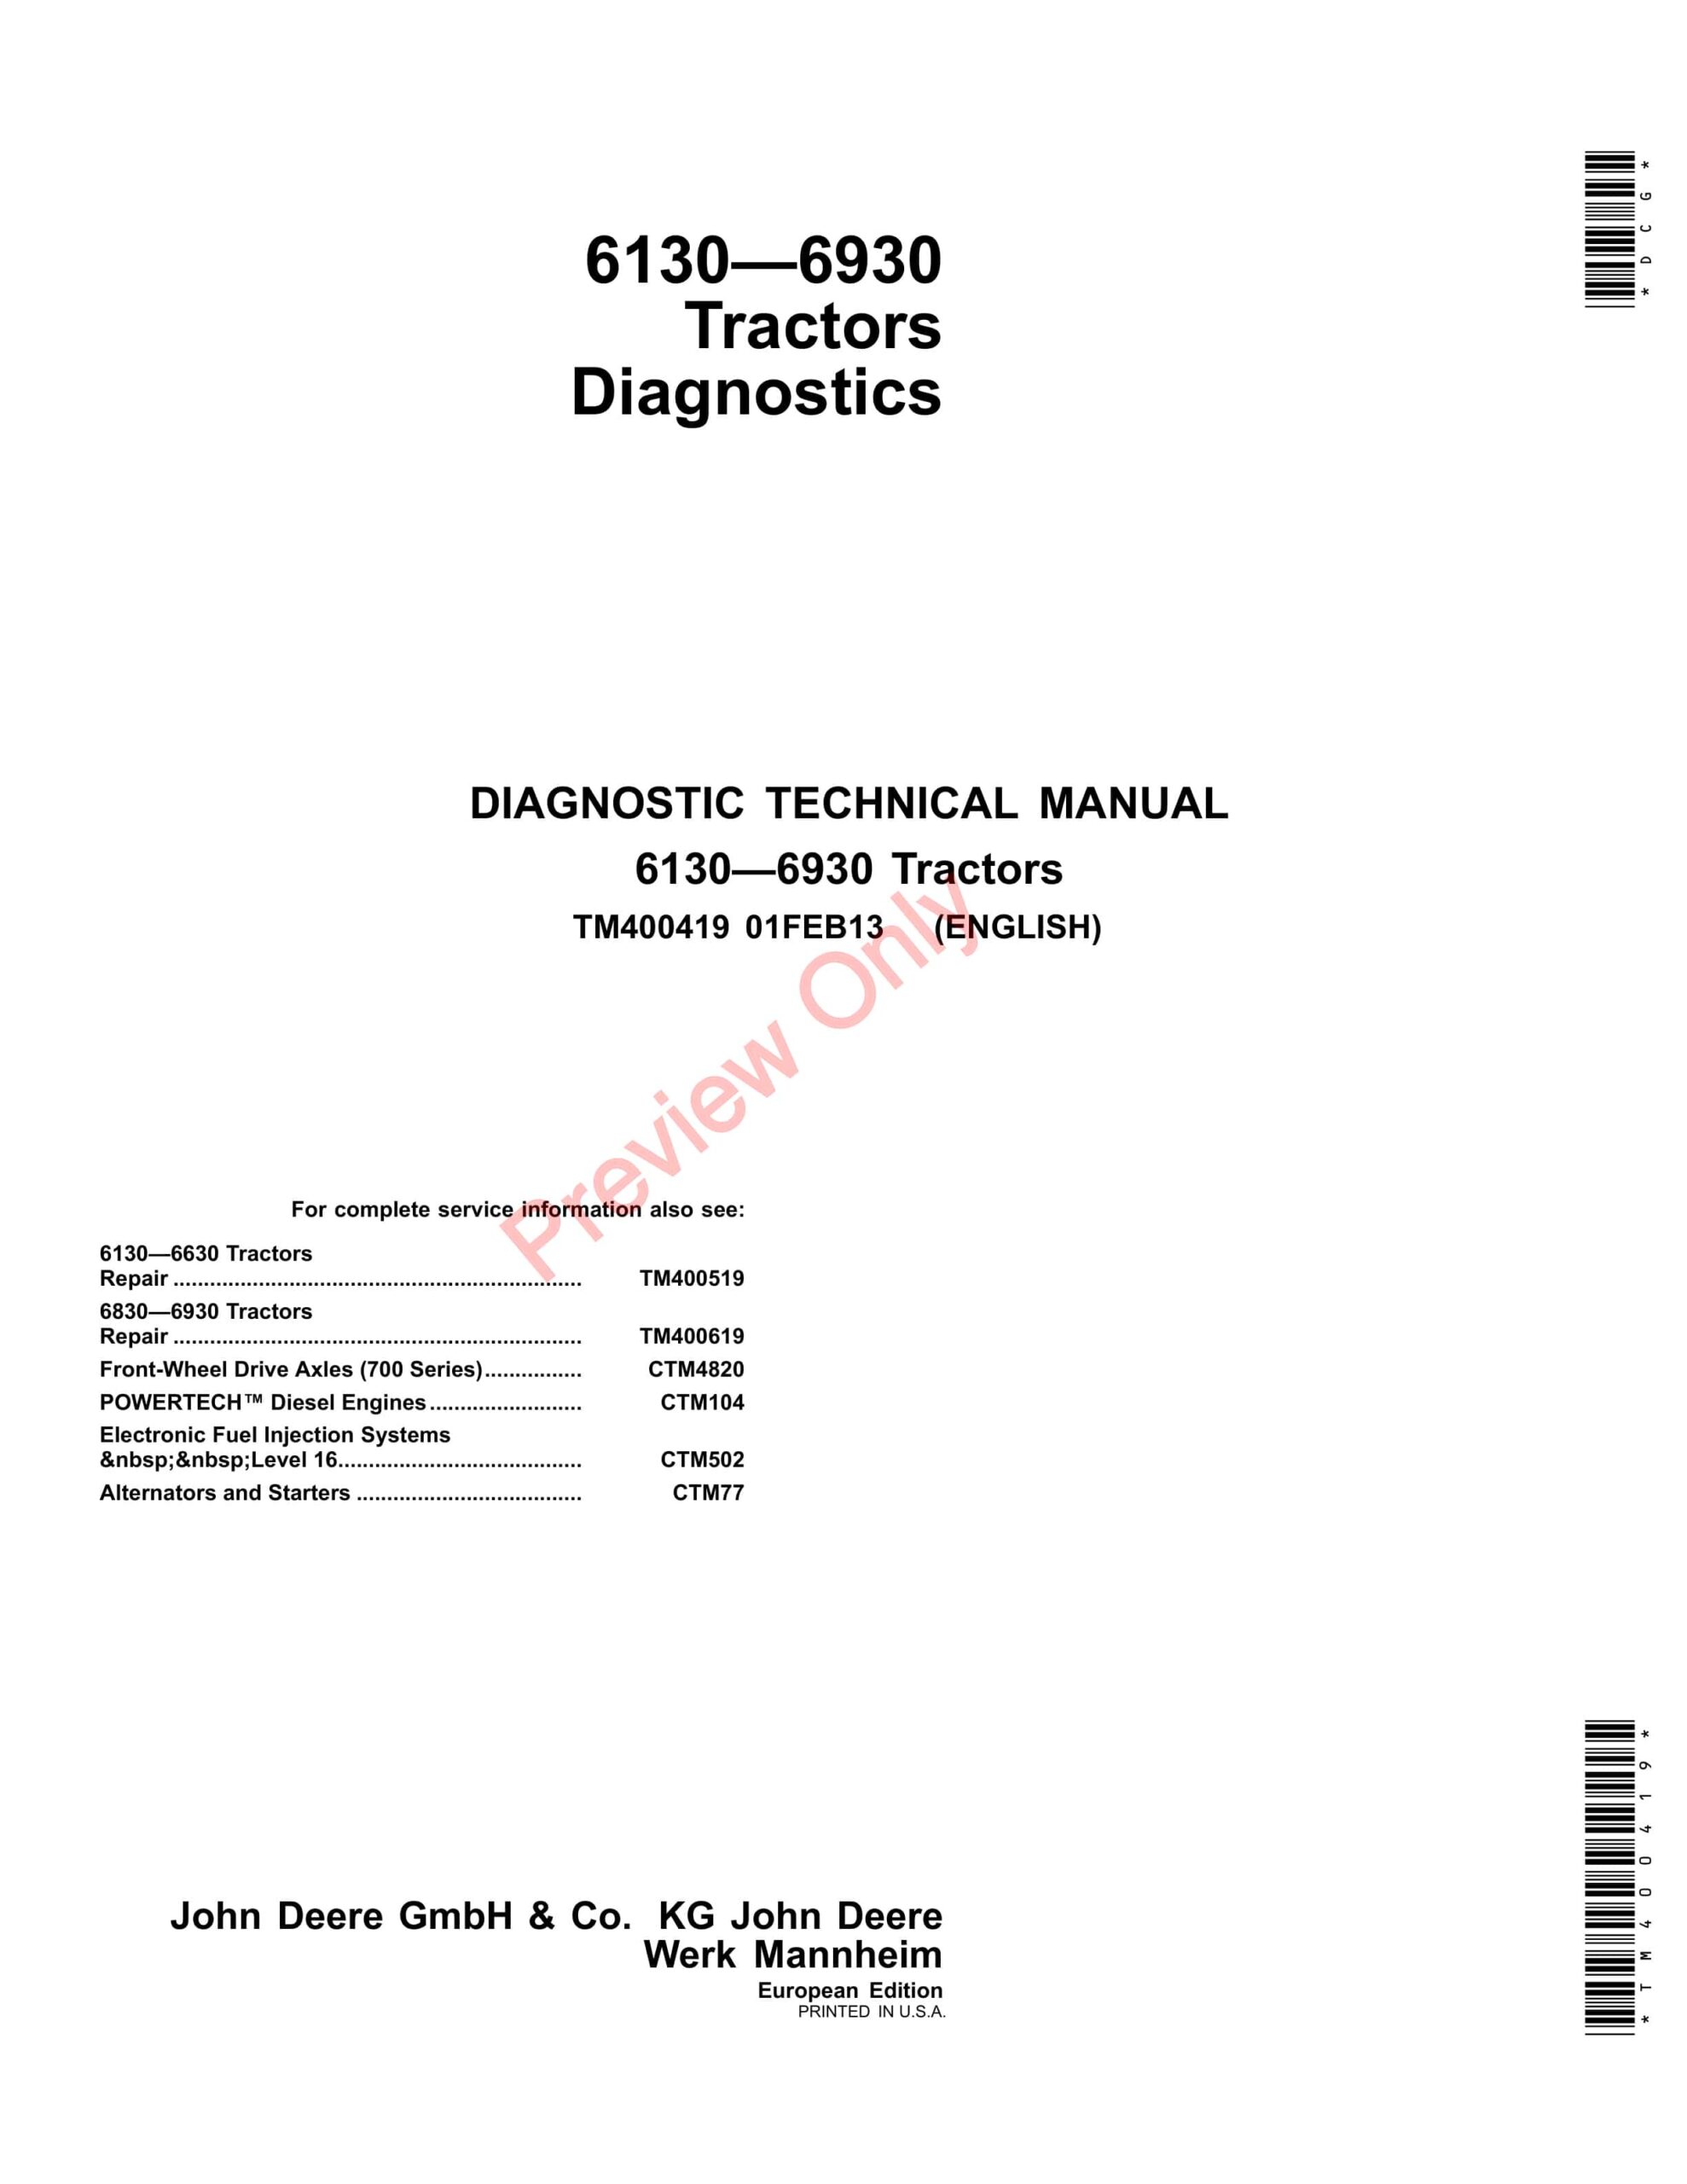 John Deere 6130, 6230, 6330, 6430, 6530, 6534, 6630, 6830 and 6930 Tractors Diagnostic Technical Manual TM400419 01FEB13-1